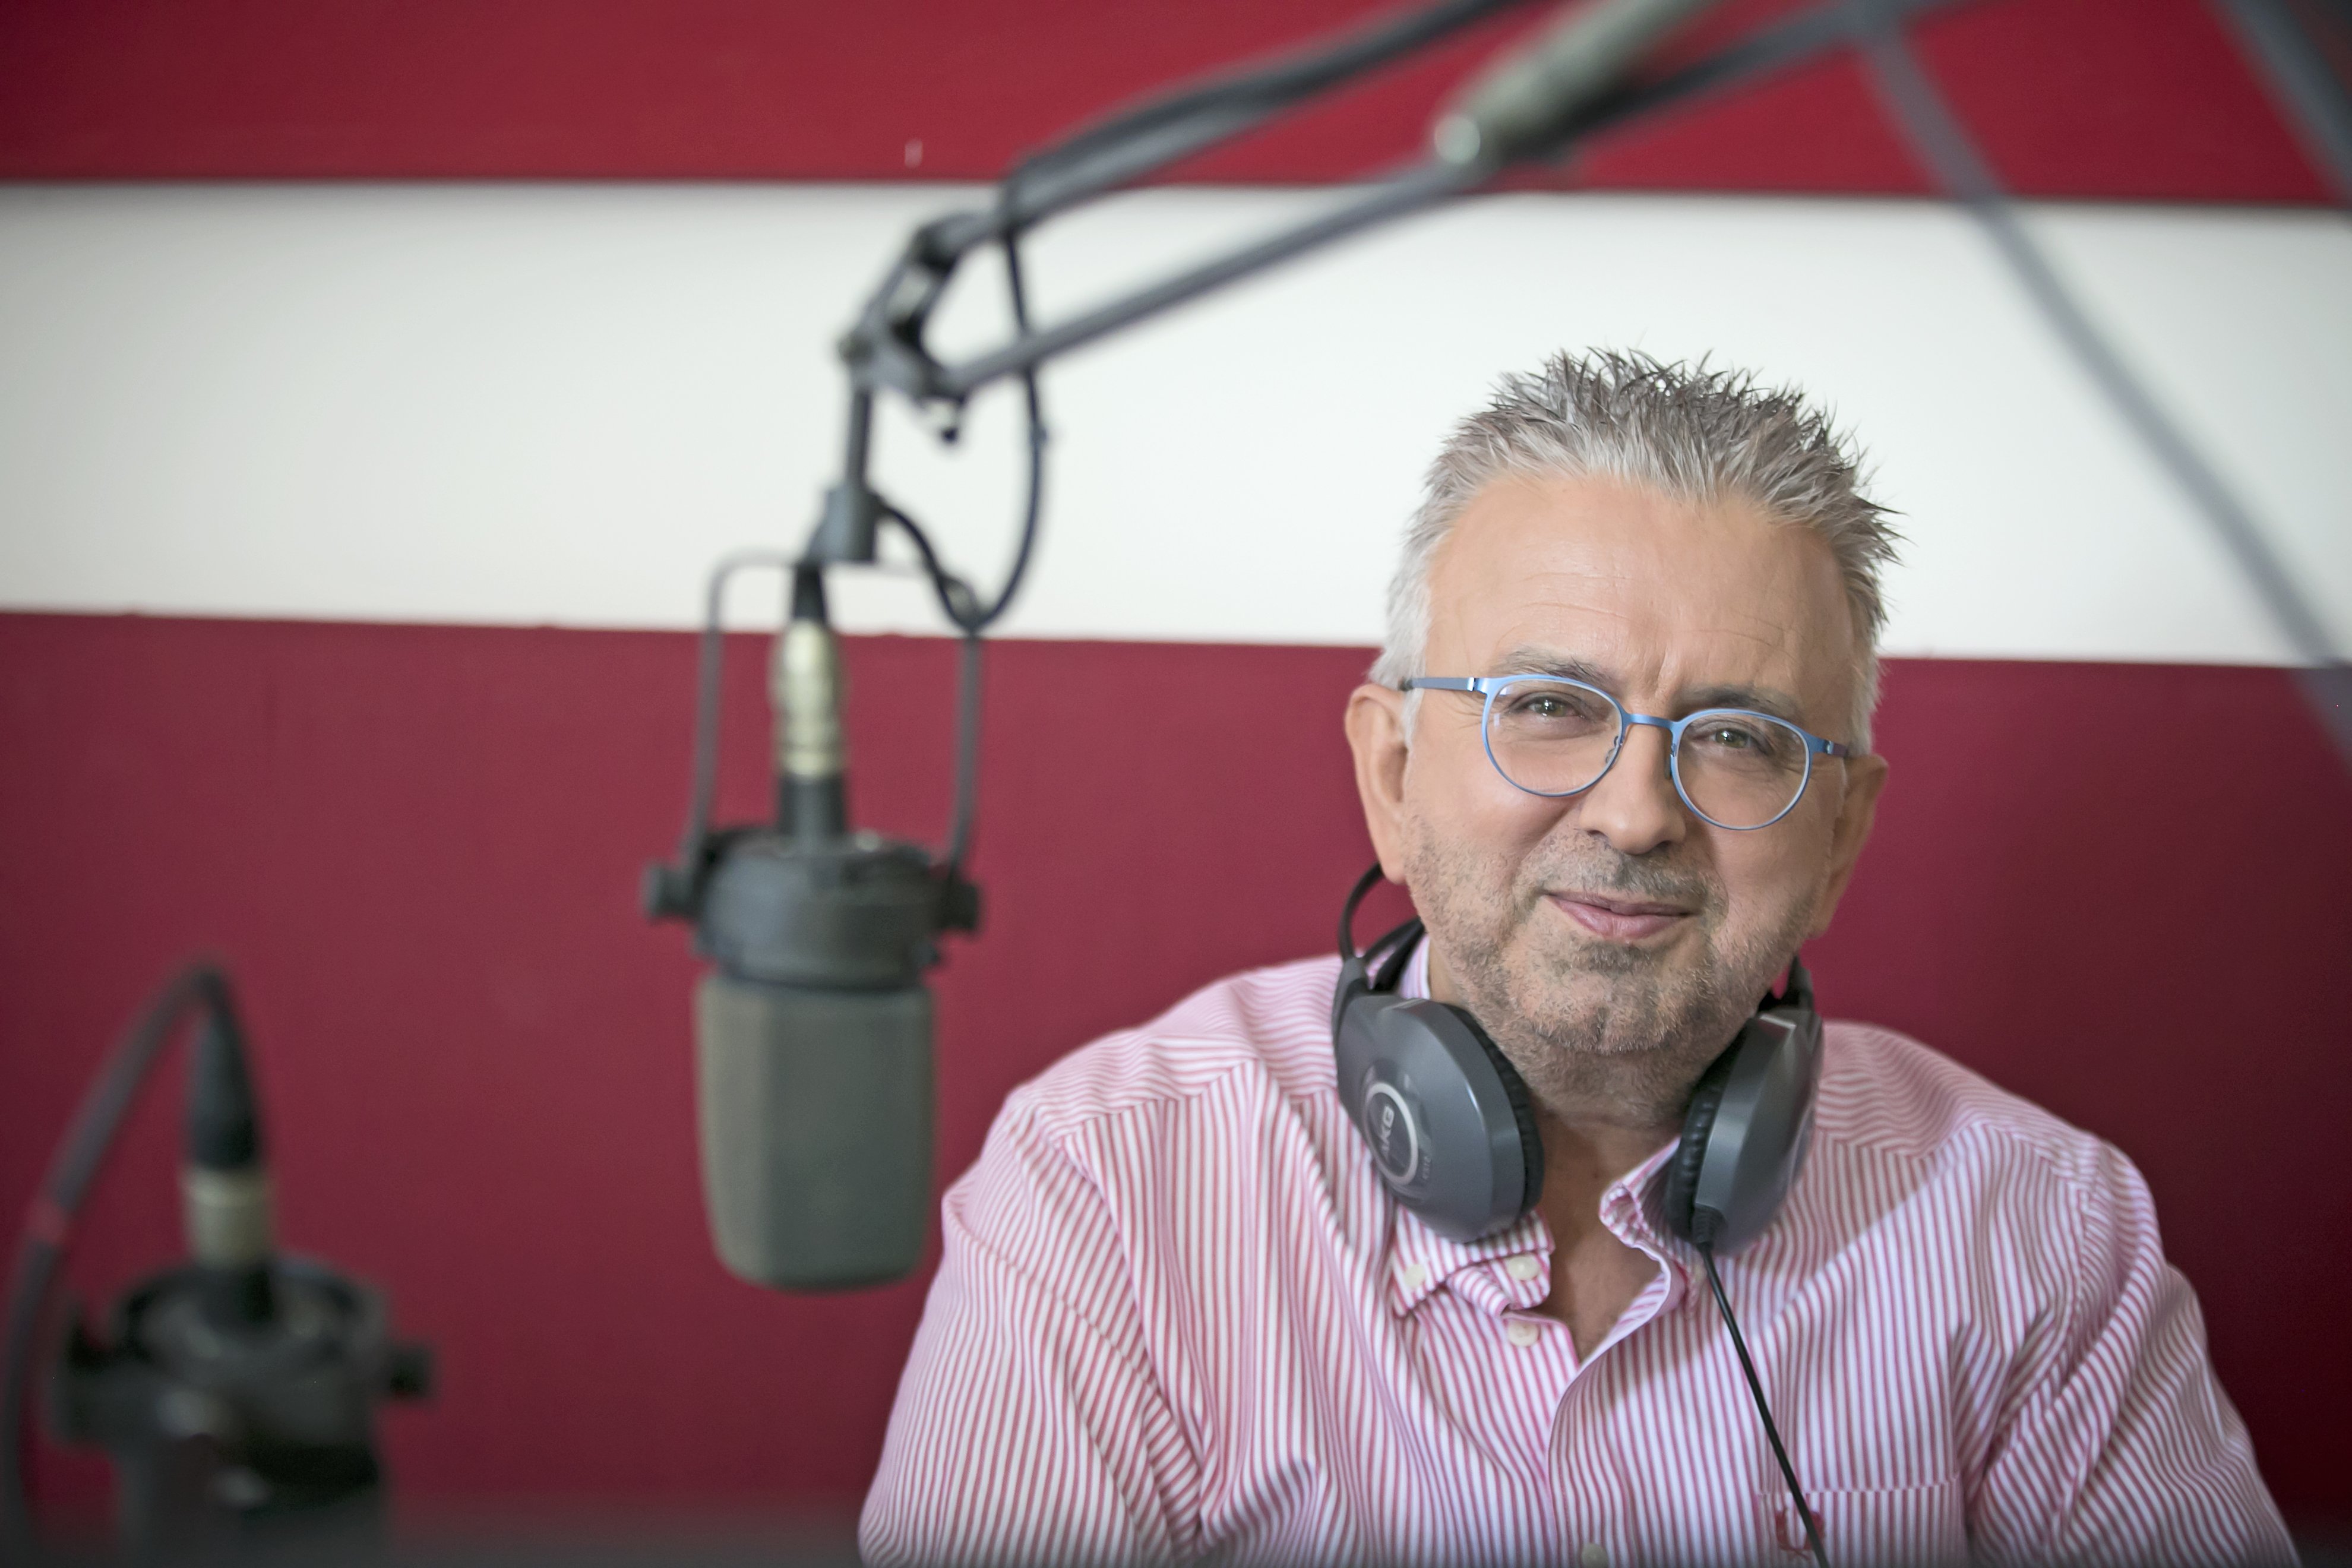 Πως σχολιάζει ο Δήμος Βερύκιος τις ακροαματικότητες των ραδιοφωνικών σταθμών